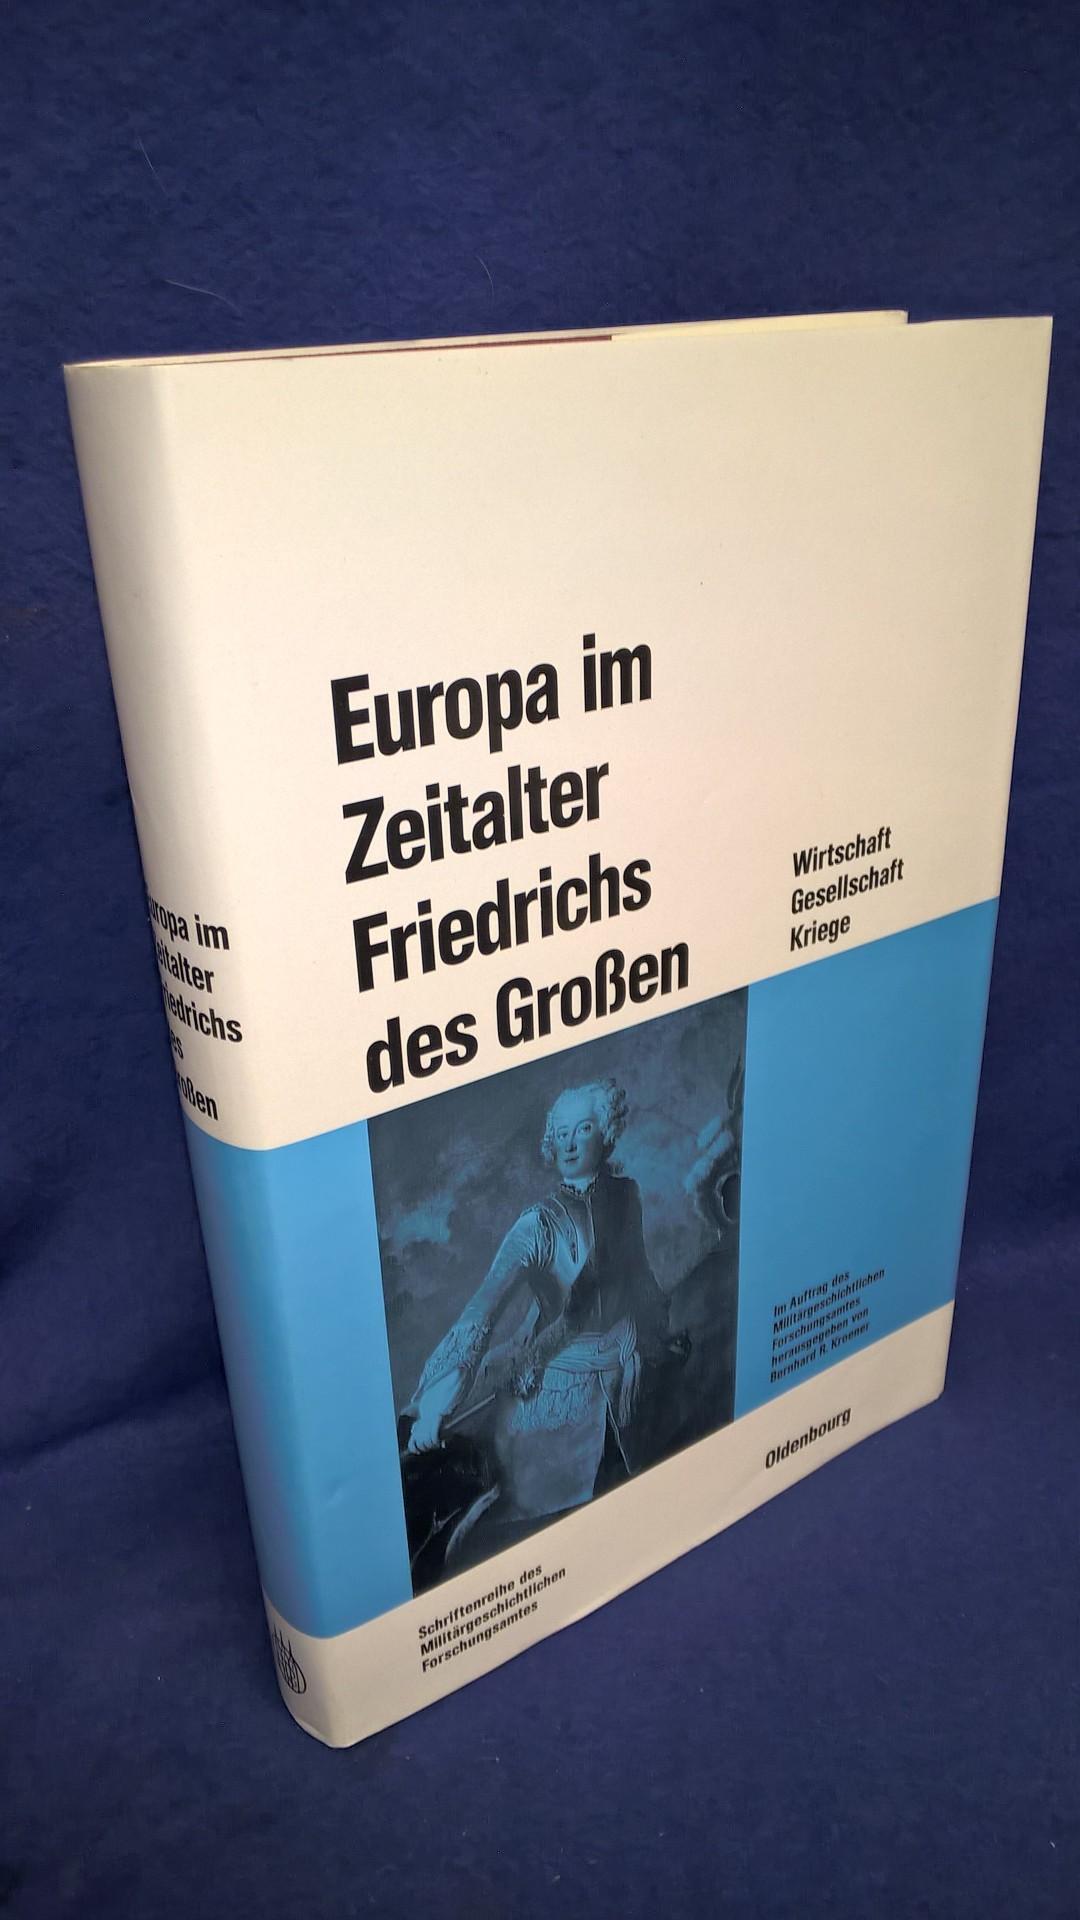 Beiträge zur Militärgeschichte, Band 26. Europa im Zeitalter Friedrichs des Großen. Wirtschaft, Gesellschaft, Kriege.